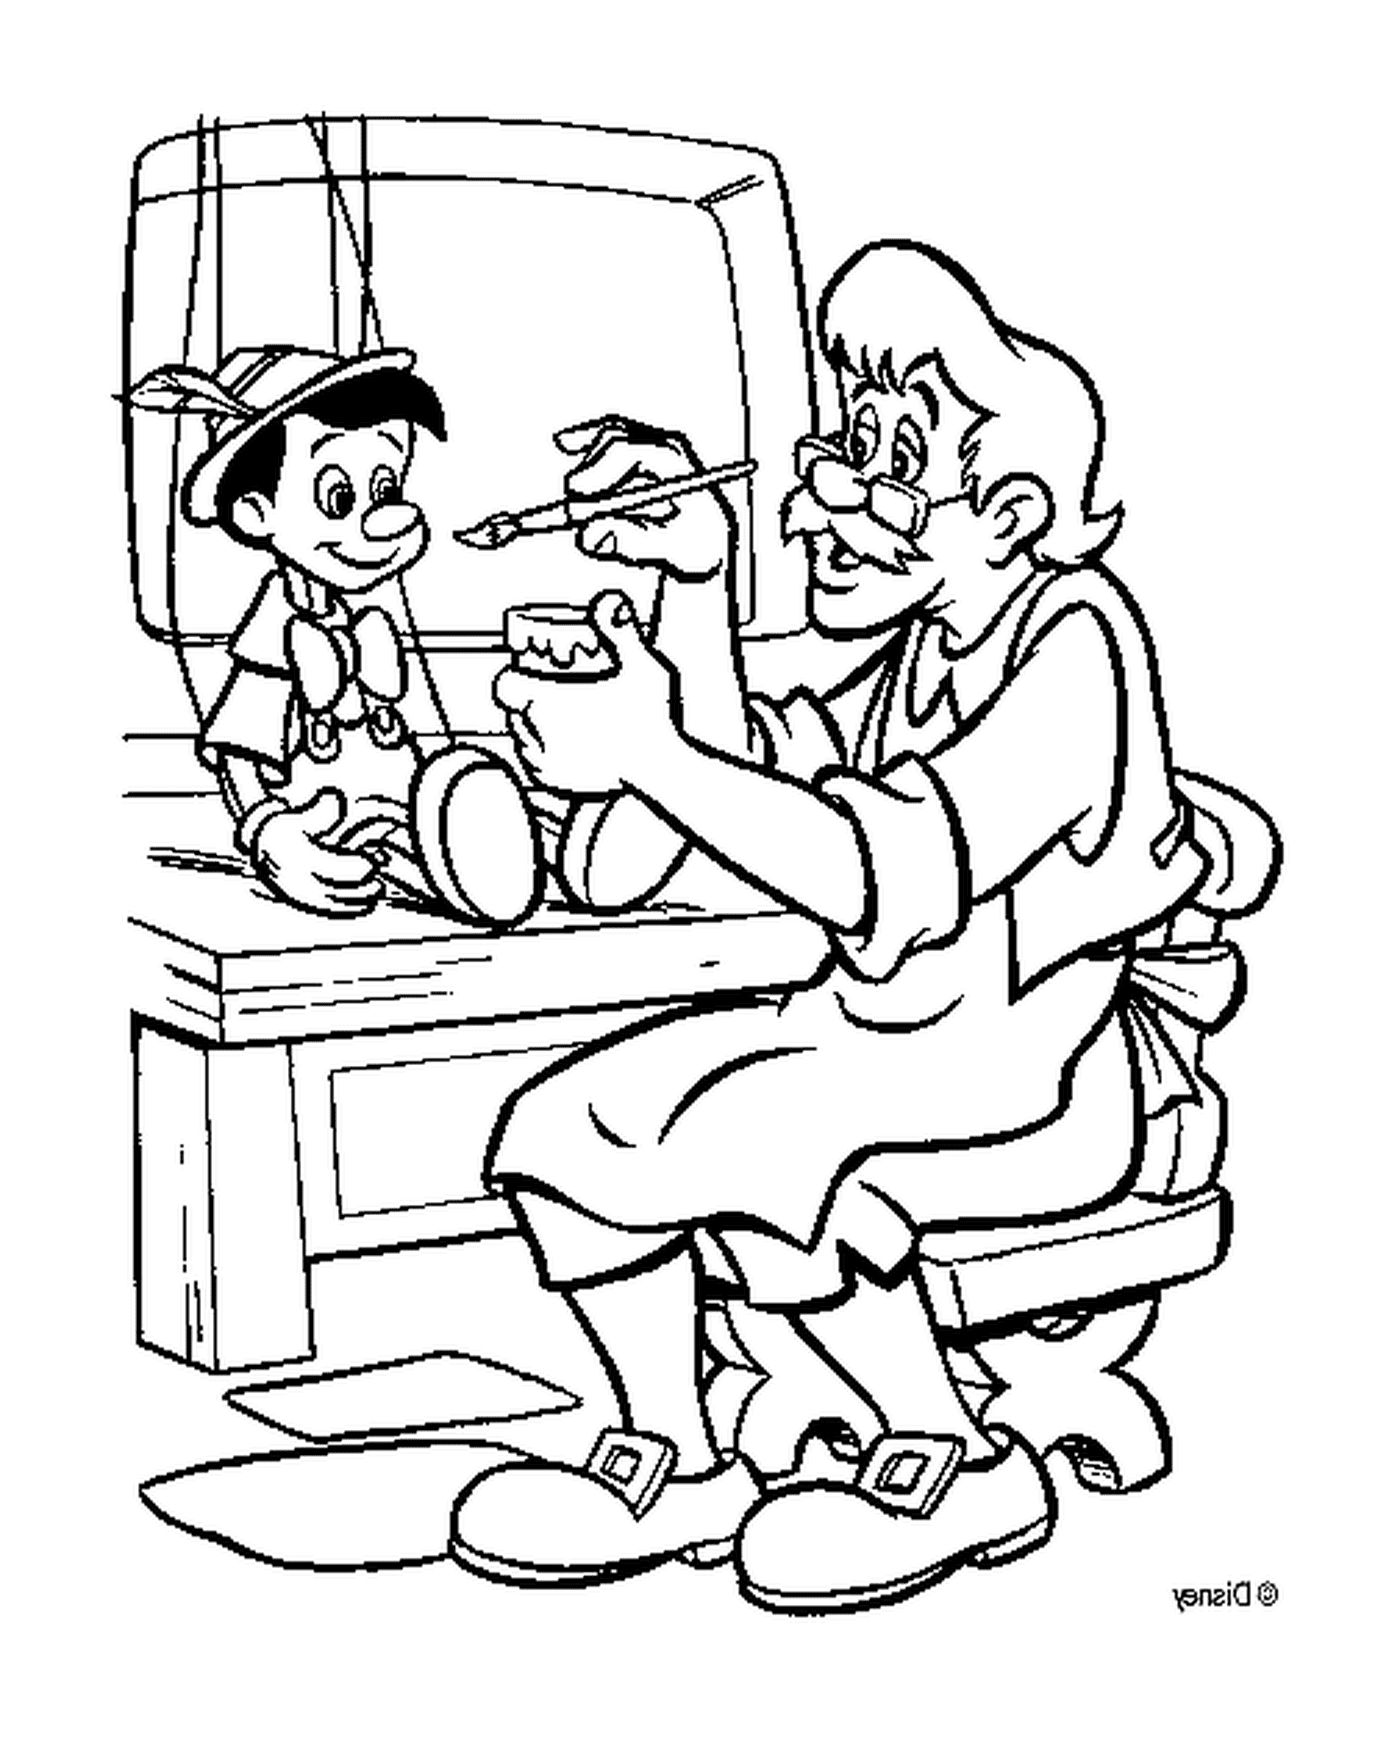  Geppetto produce Pinocchio nella sua bottega 